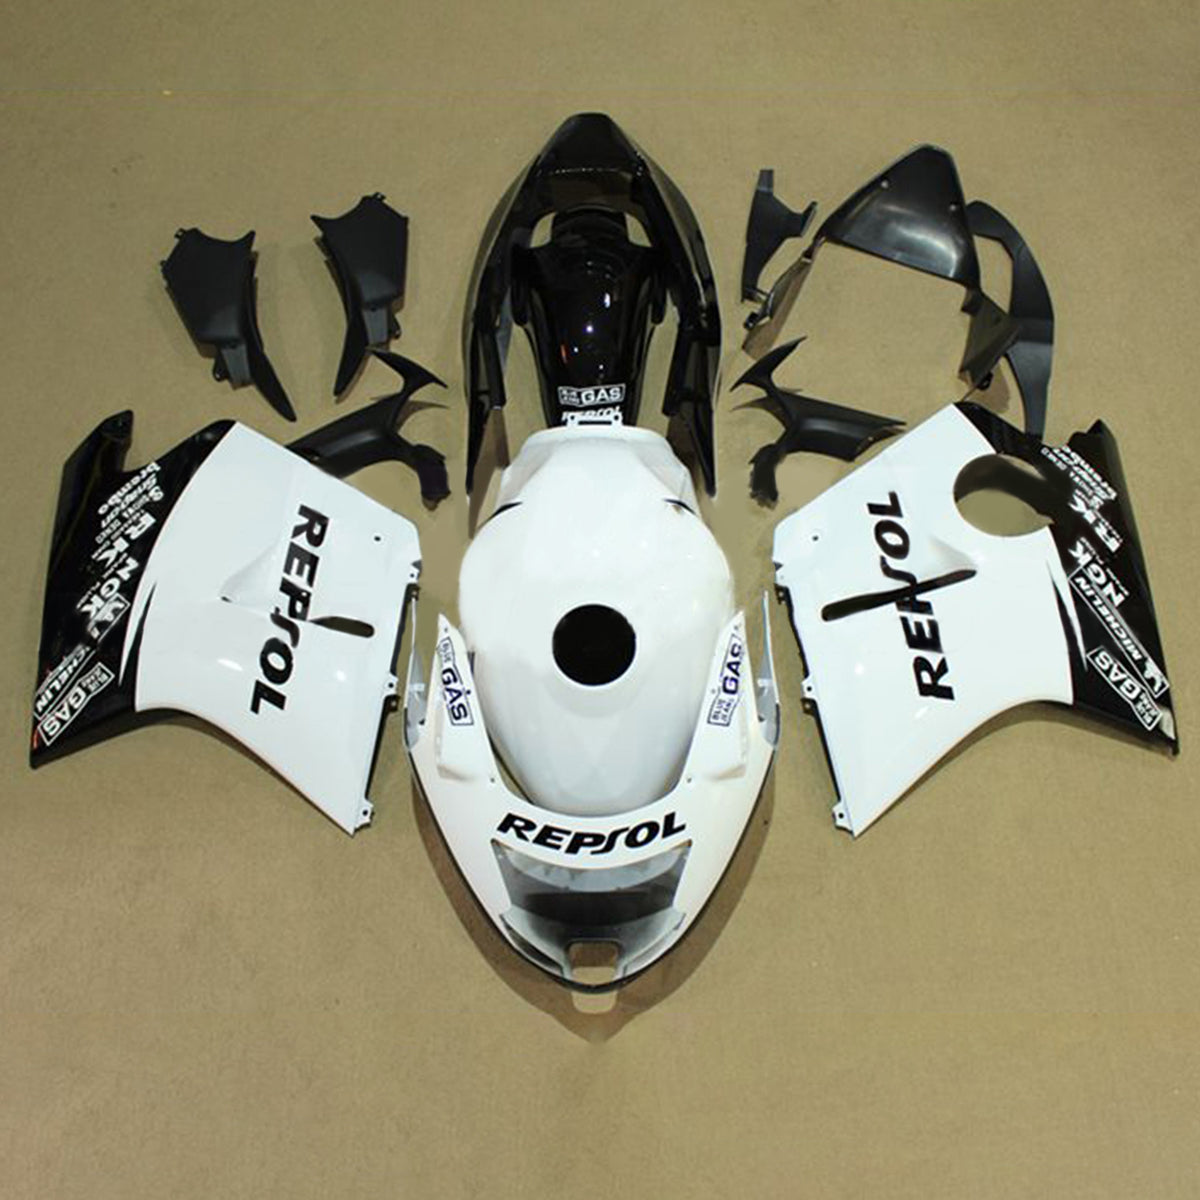 Amotopart 1996-2007 CBR1100XX SuperBlackBird Honda Black&White Repjol Fairing Kit